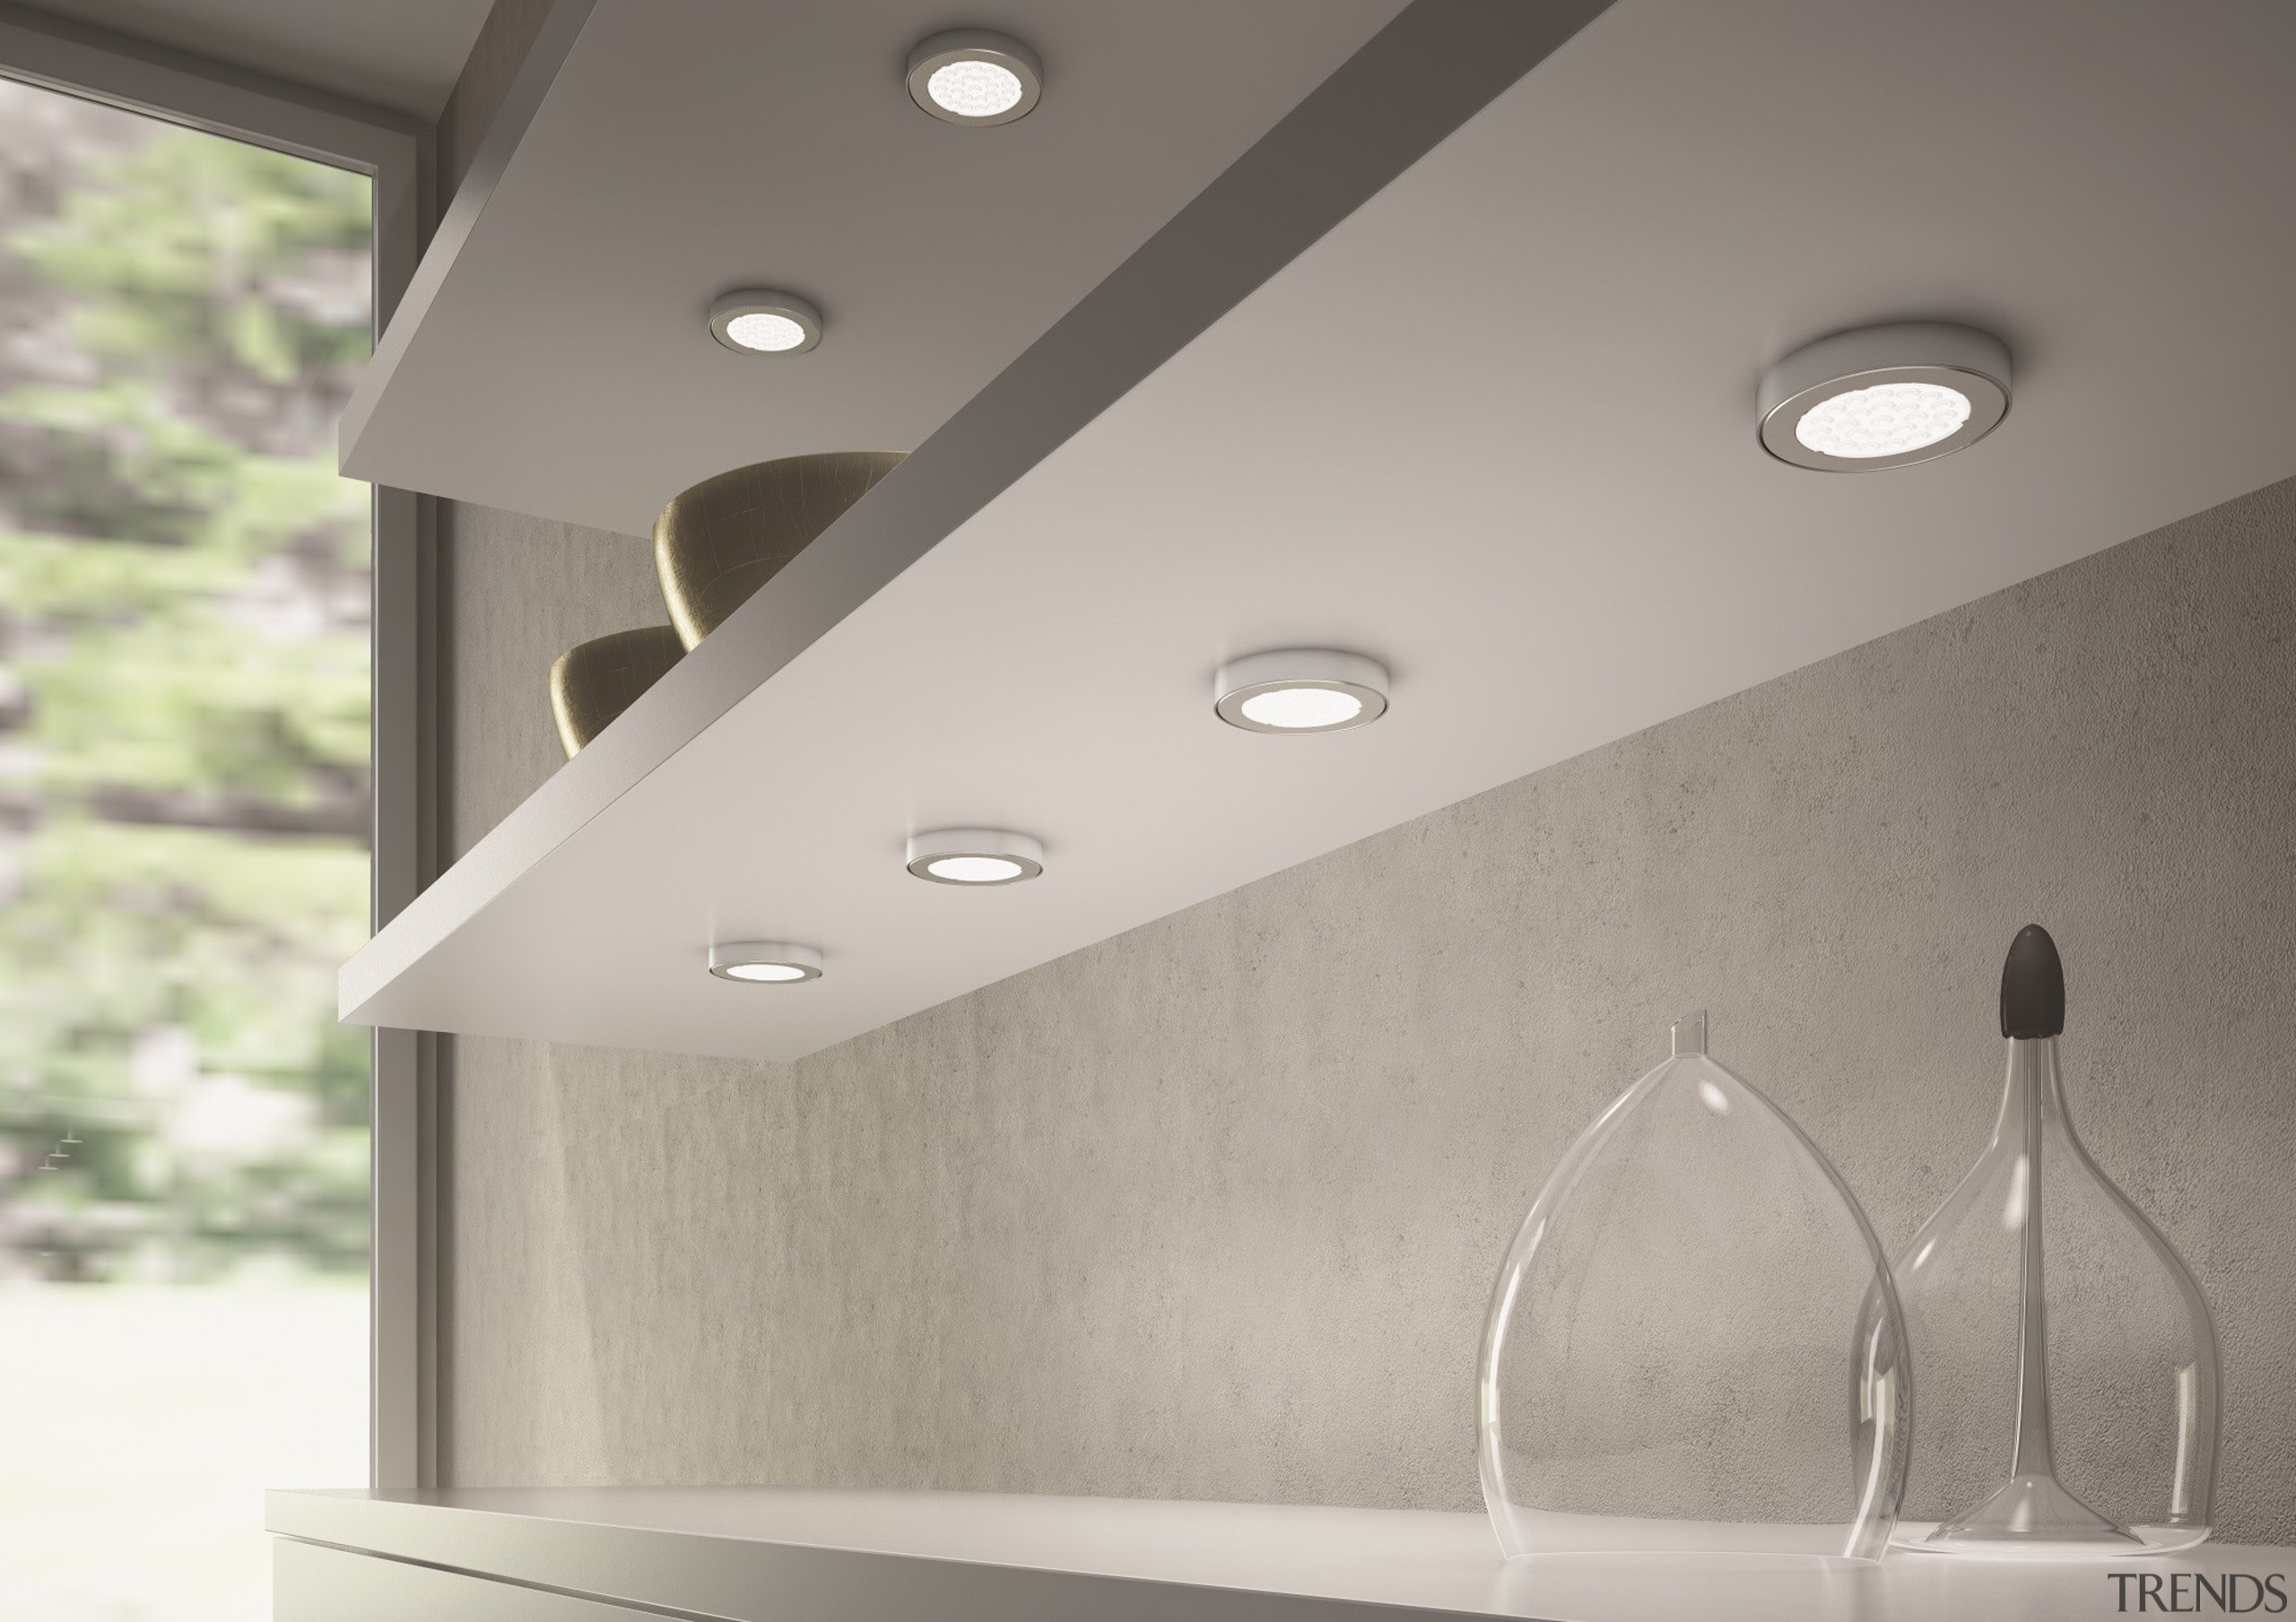 Domus Line Metris V12 LED Spotlight SpacerMade in angle, ceiling, daylighting, light, light fixture, lighting, product design, gray